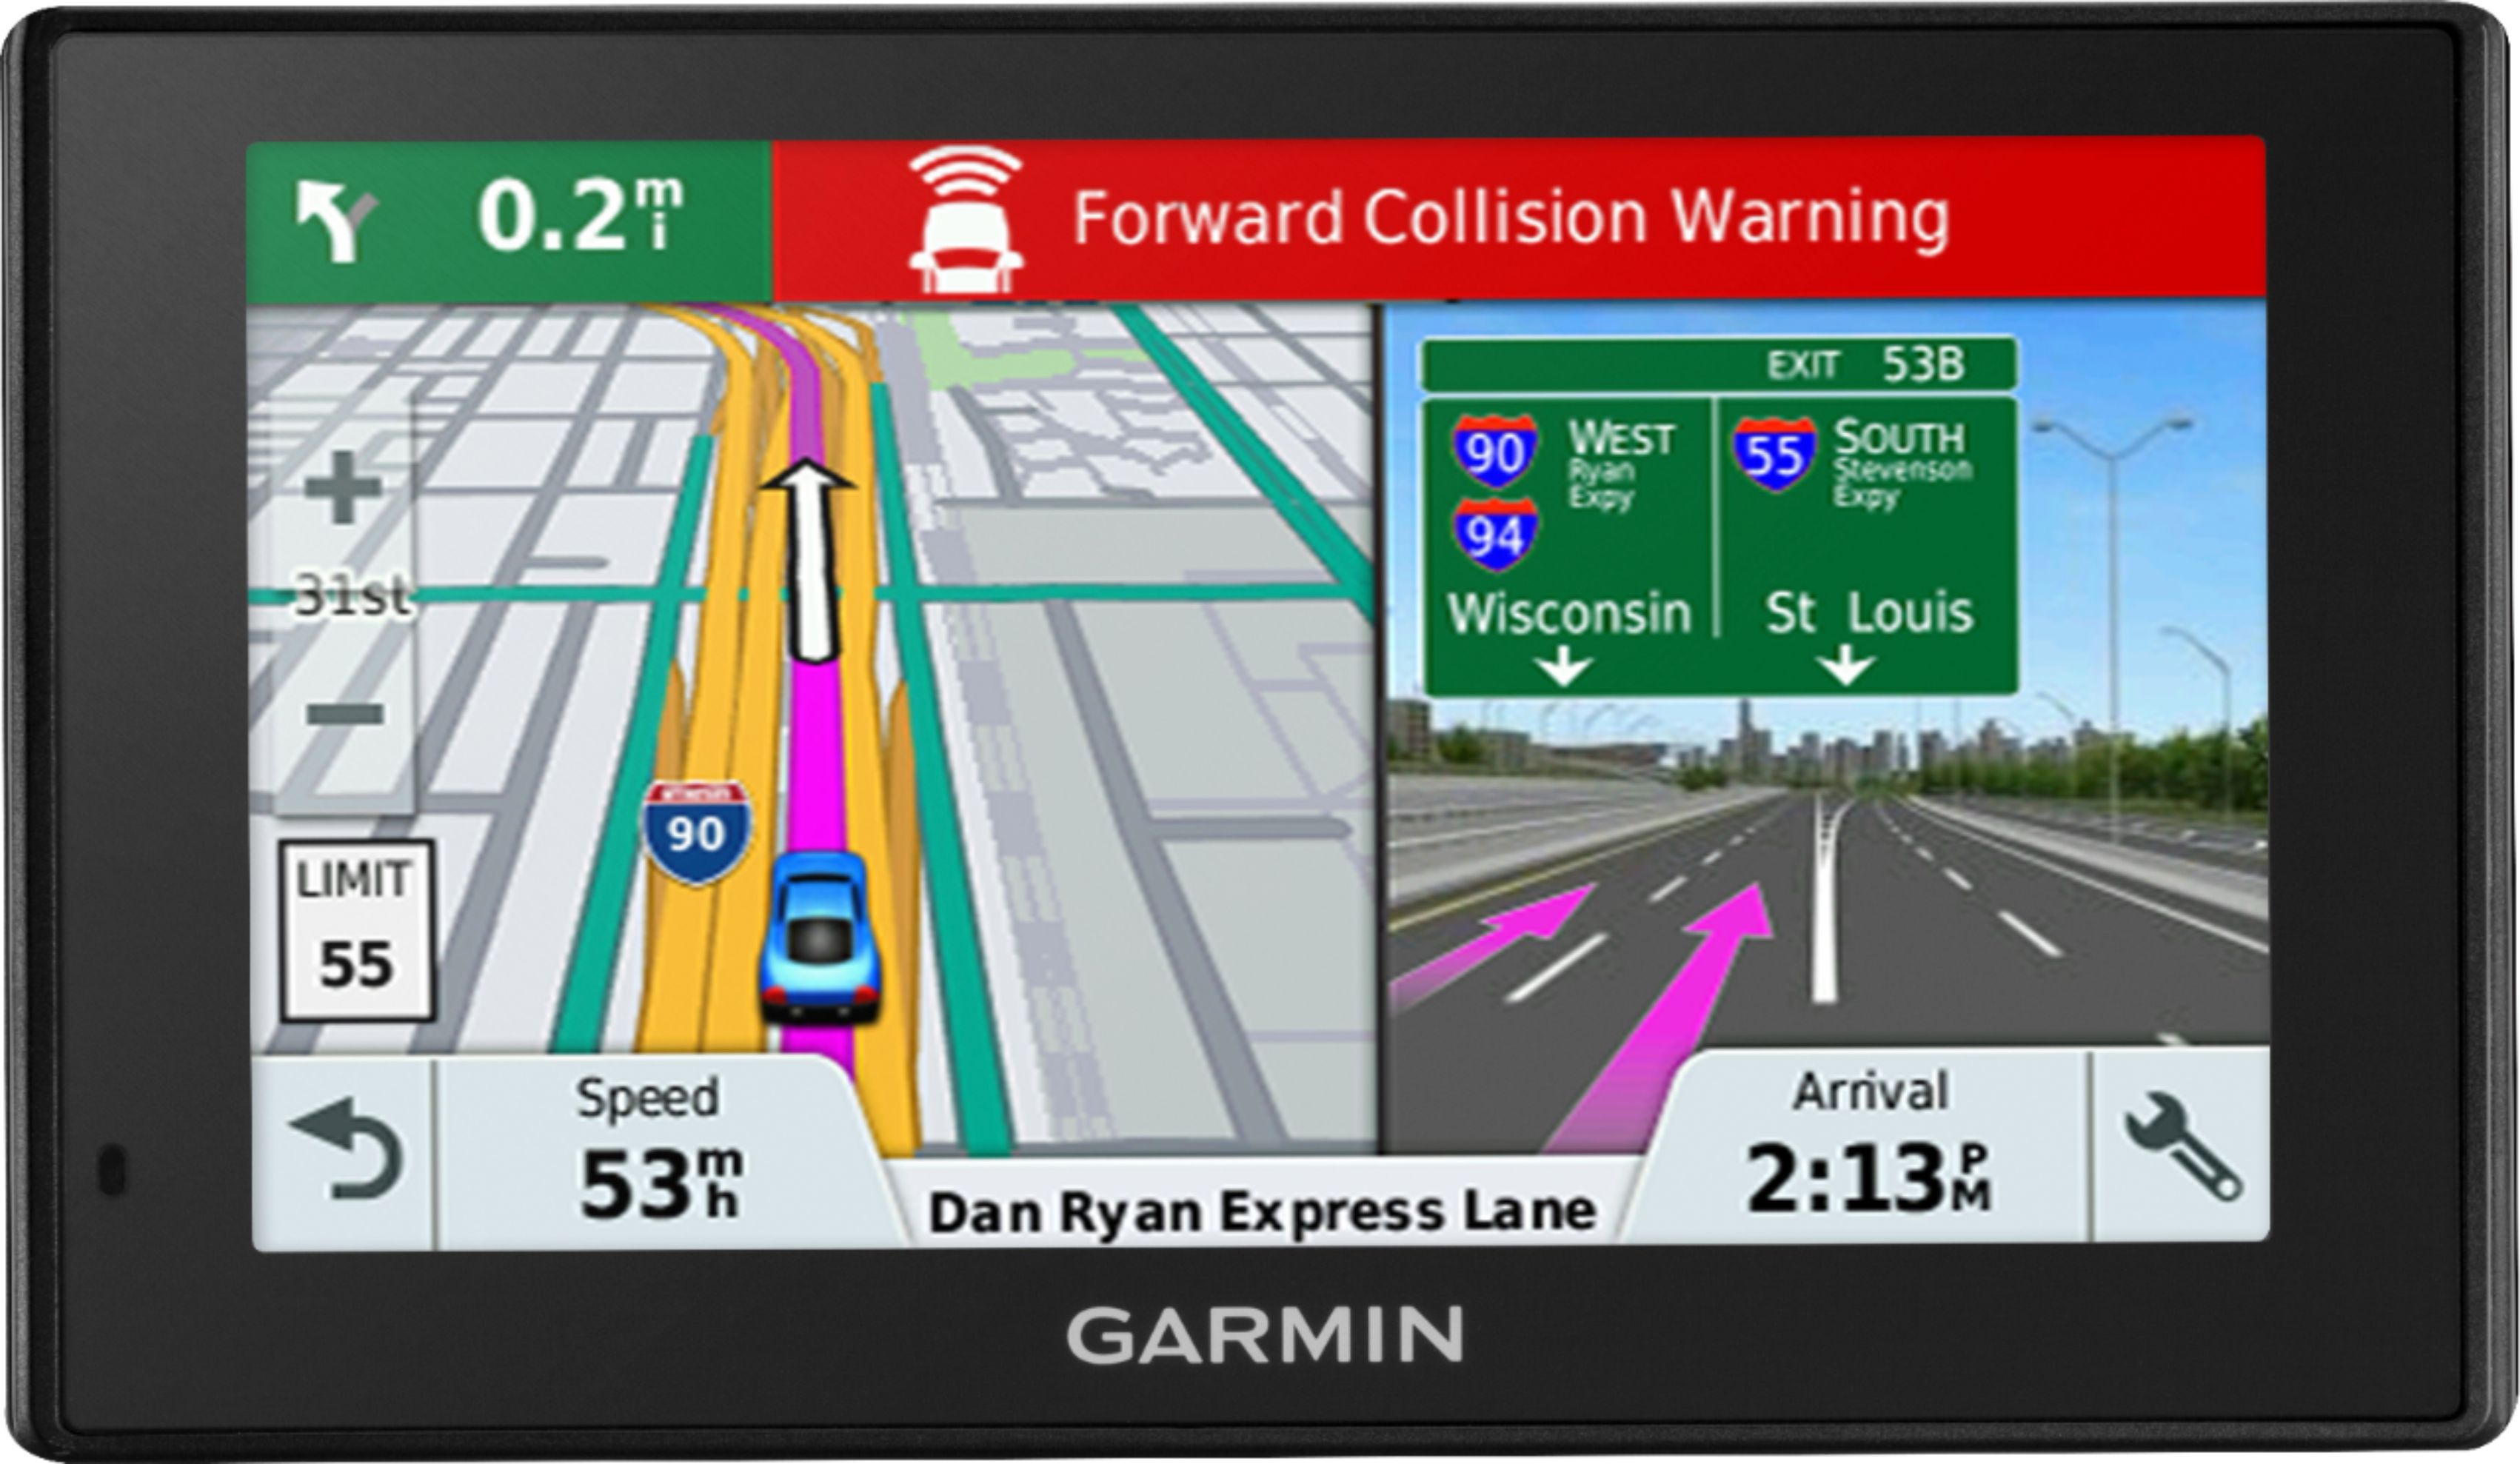 Kommandør klæde sig ud jord Customer Reviews: Garmin DriveAssist 51 LMT-S 5" GPS with Built-In Camera  and Bluetooth Black 010-01682-02 - Best Buy